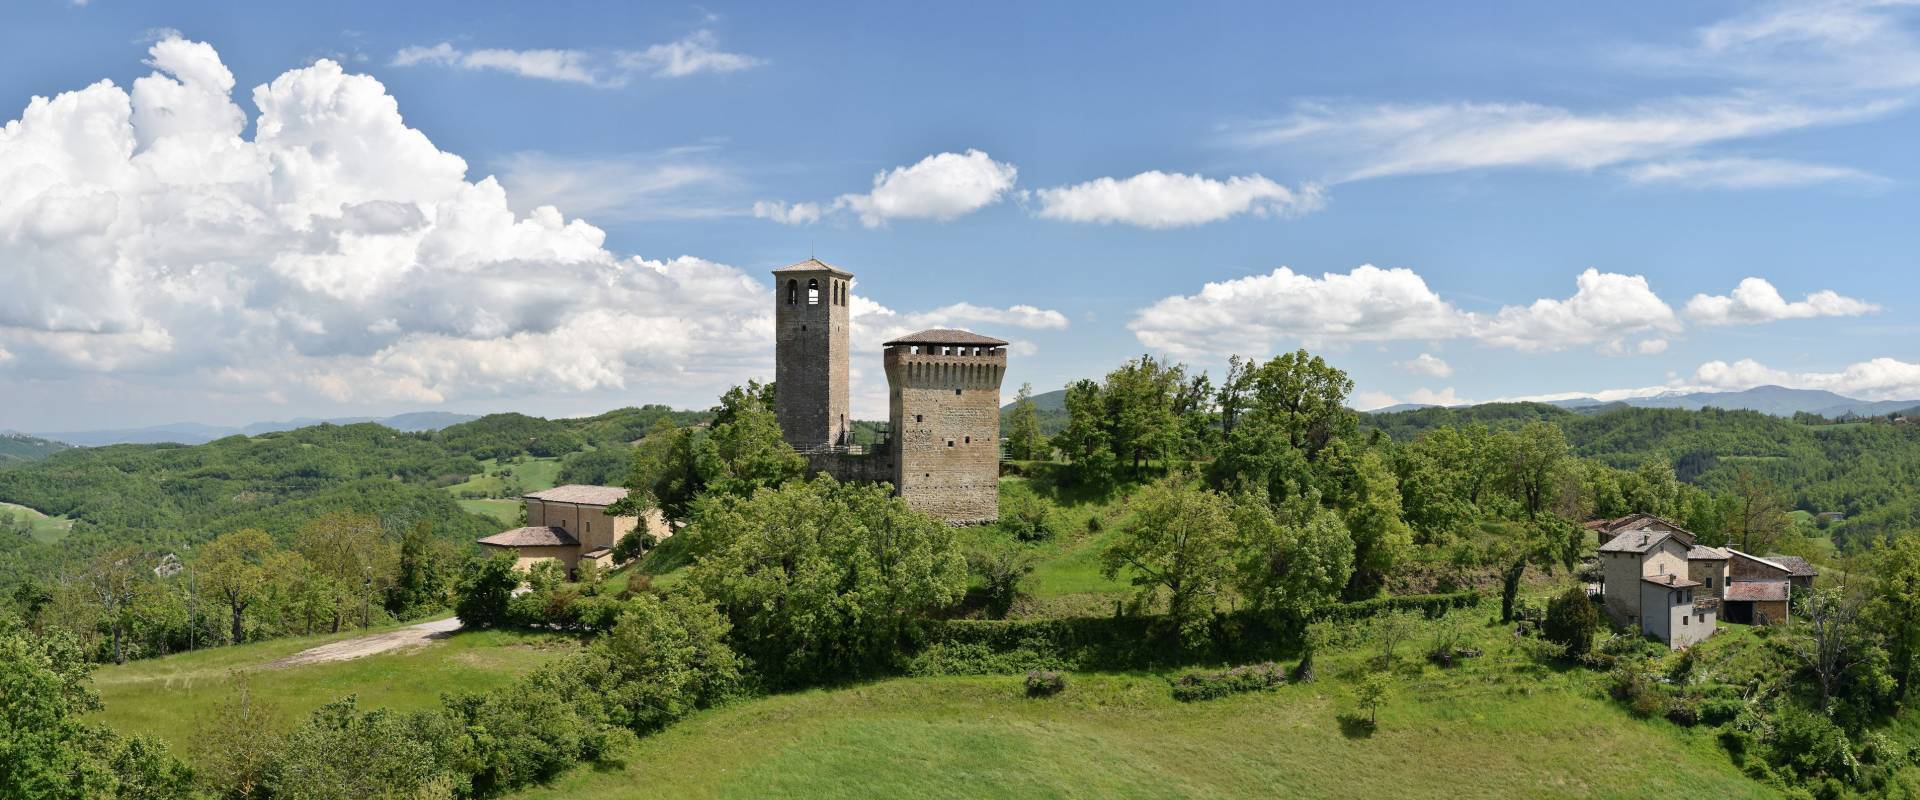 Castello di Sarzano - Mastio foto di Beppe Lombardi